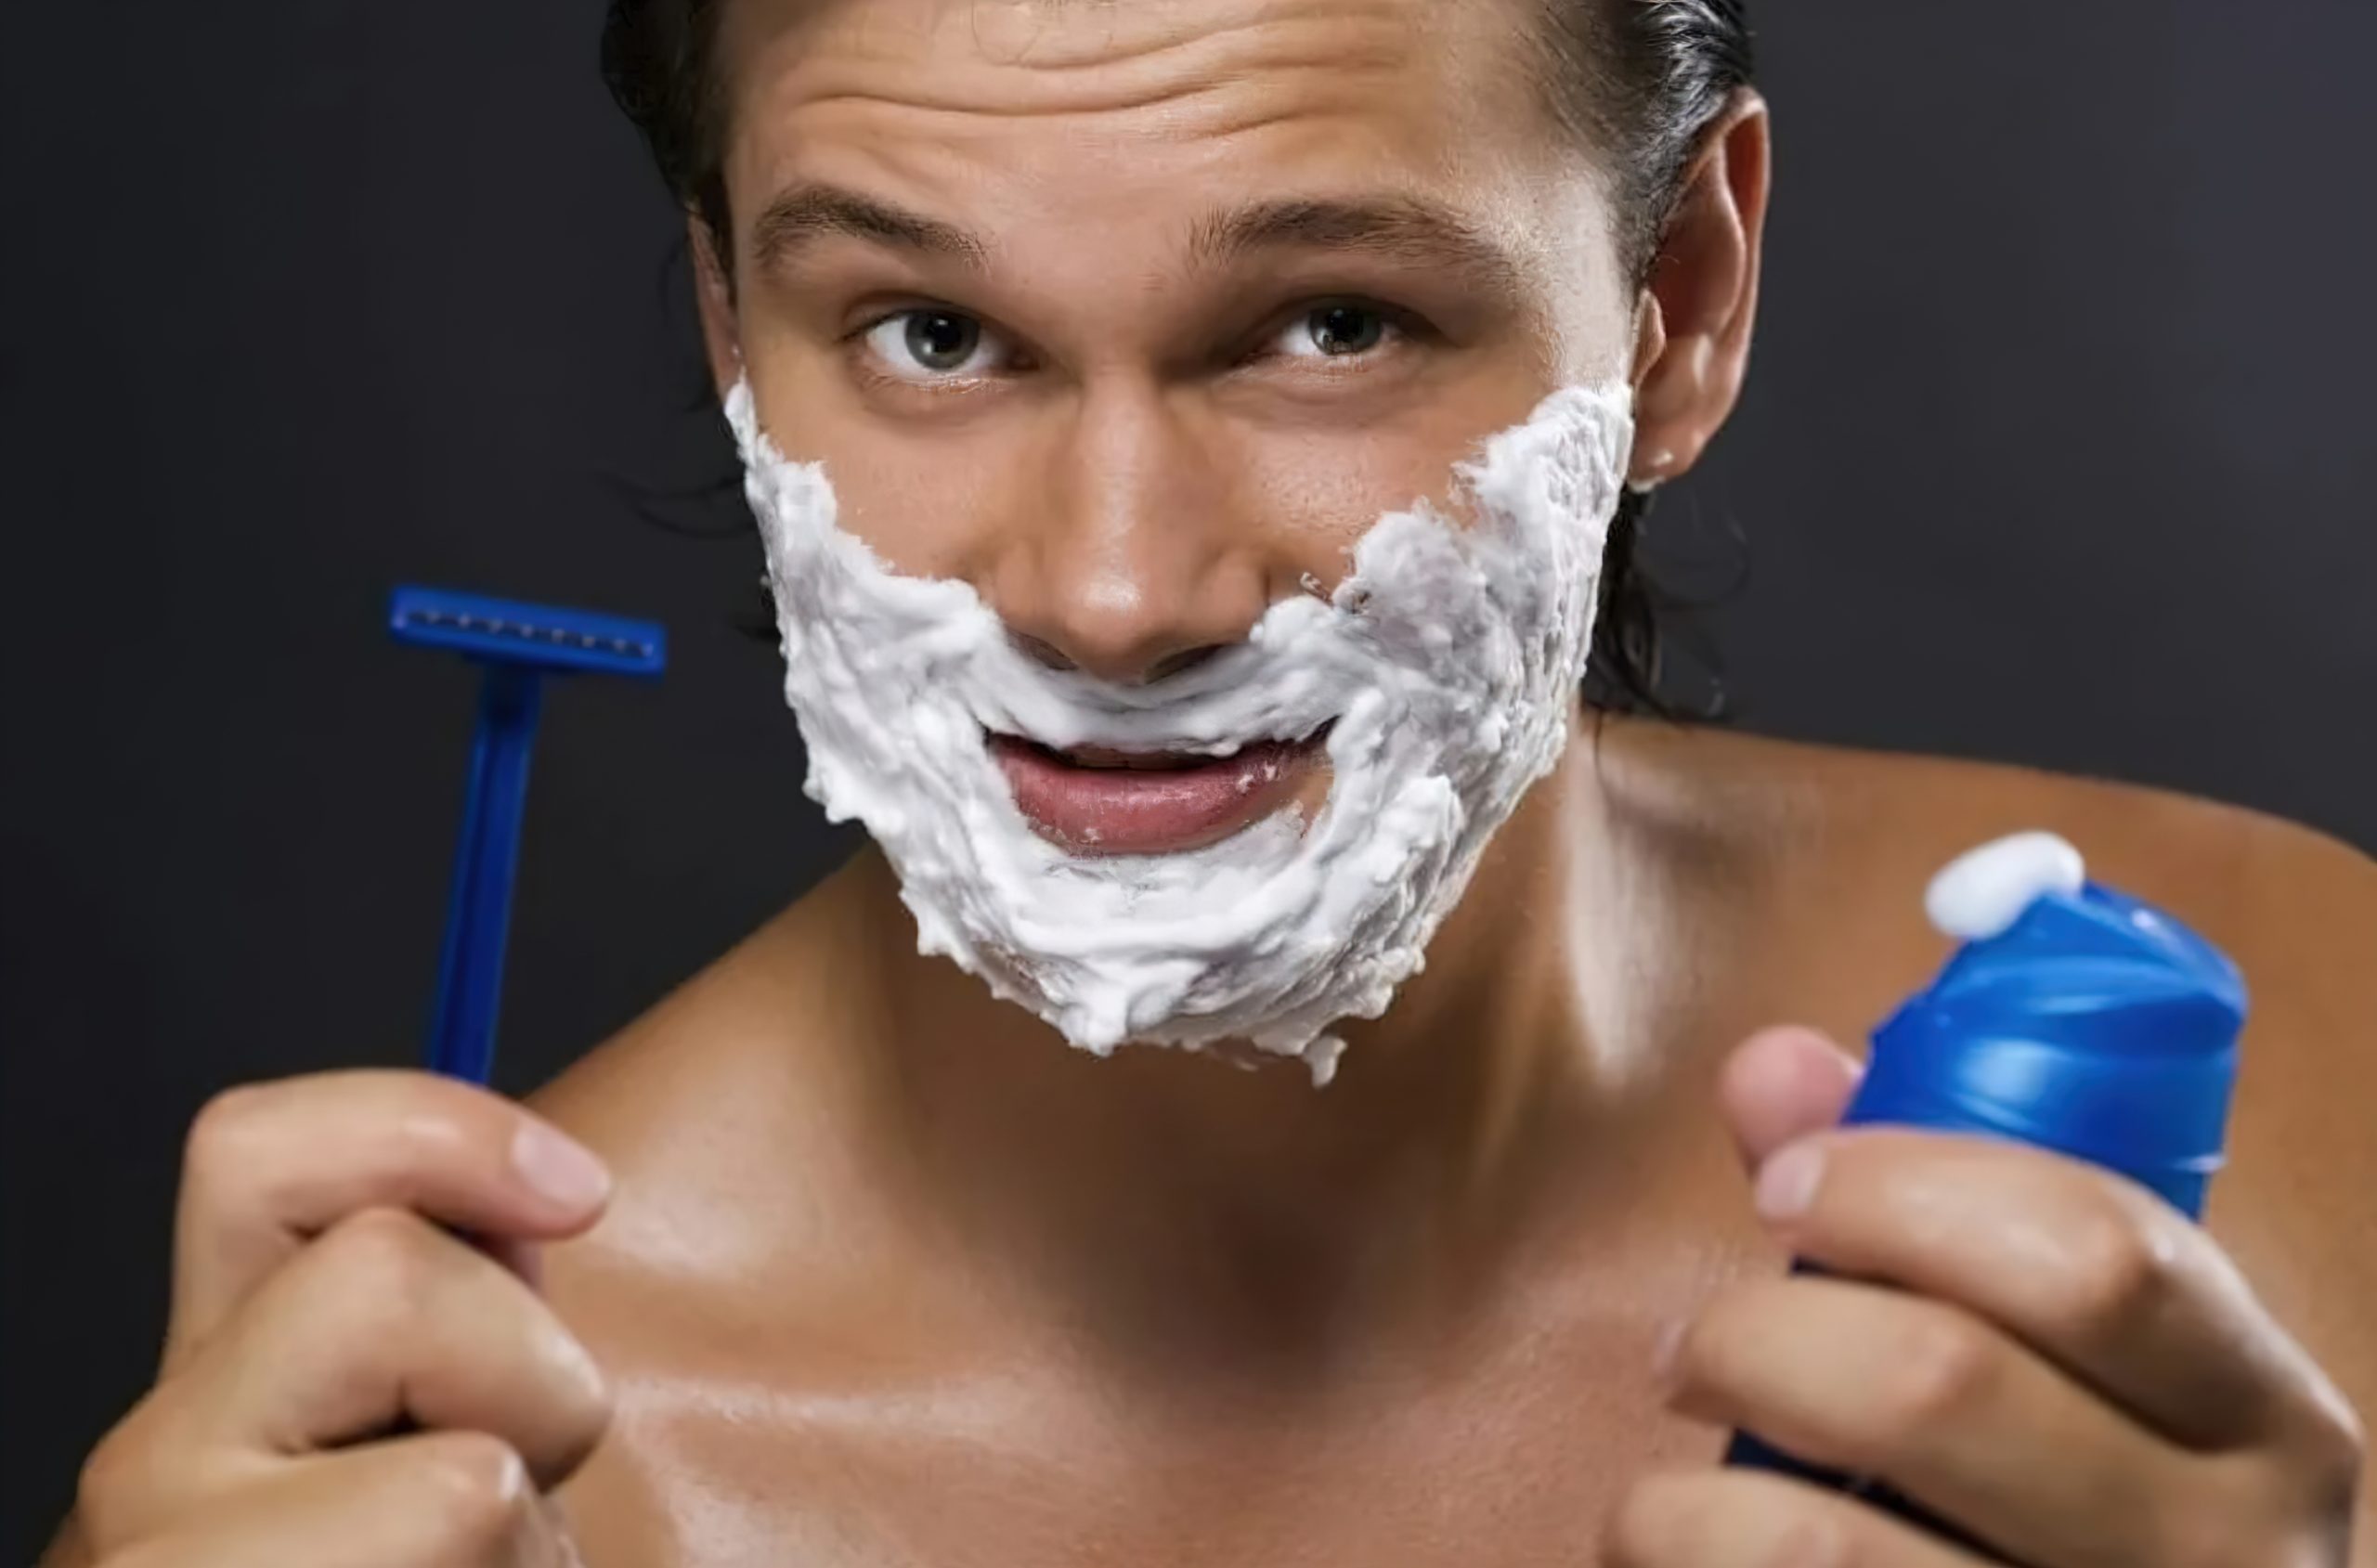 Как увеличить губы пеной для бритья. Мужчина бреется. Пена для бритья для мужчин. Реклама пены для бритья. Пена для бритья на лице.